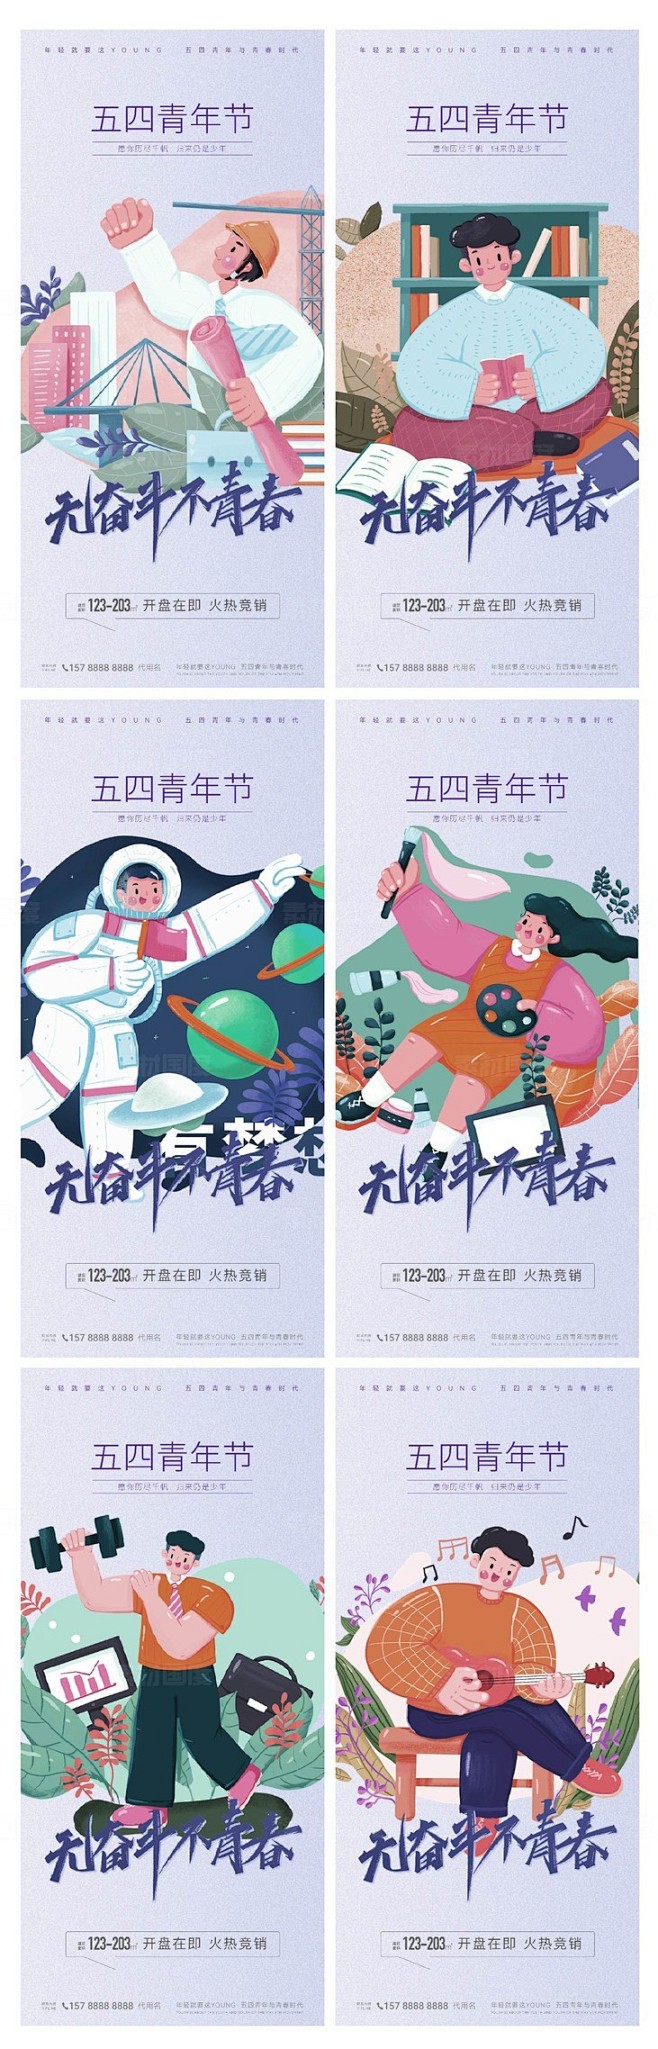 五四青年节人物插画系列海报 劳动节 青春...